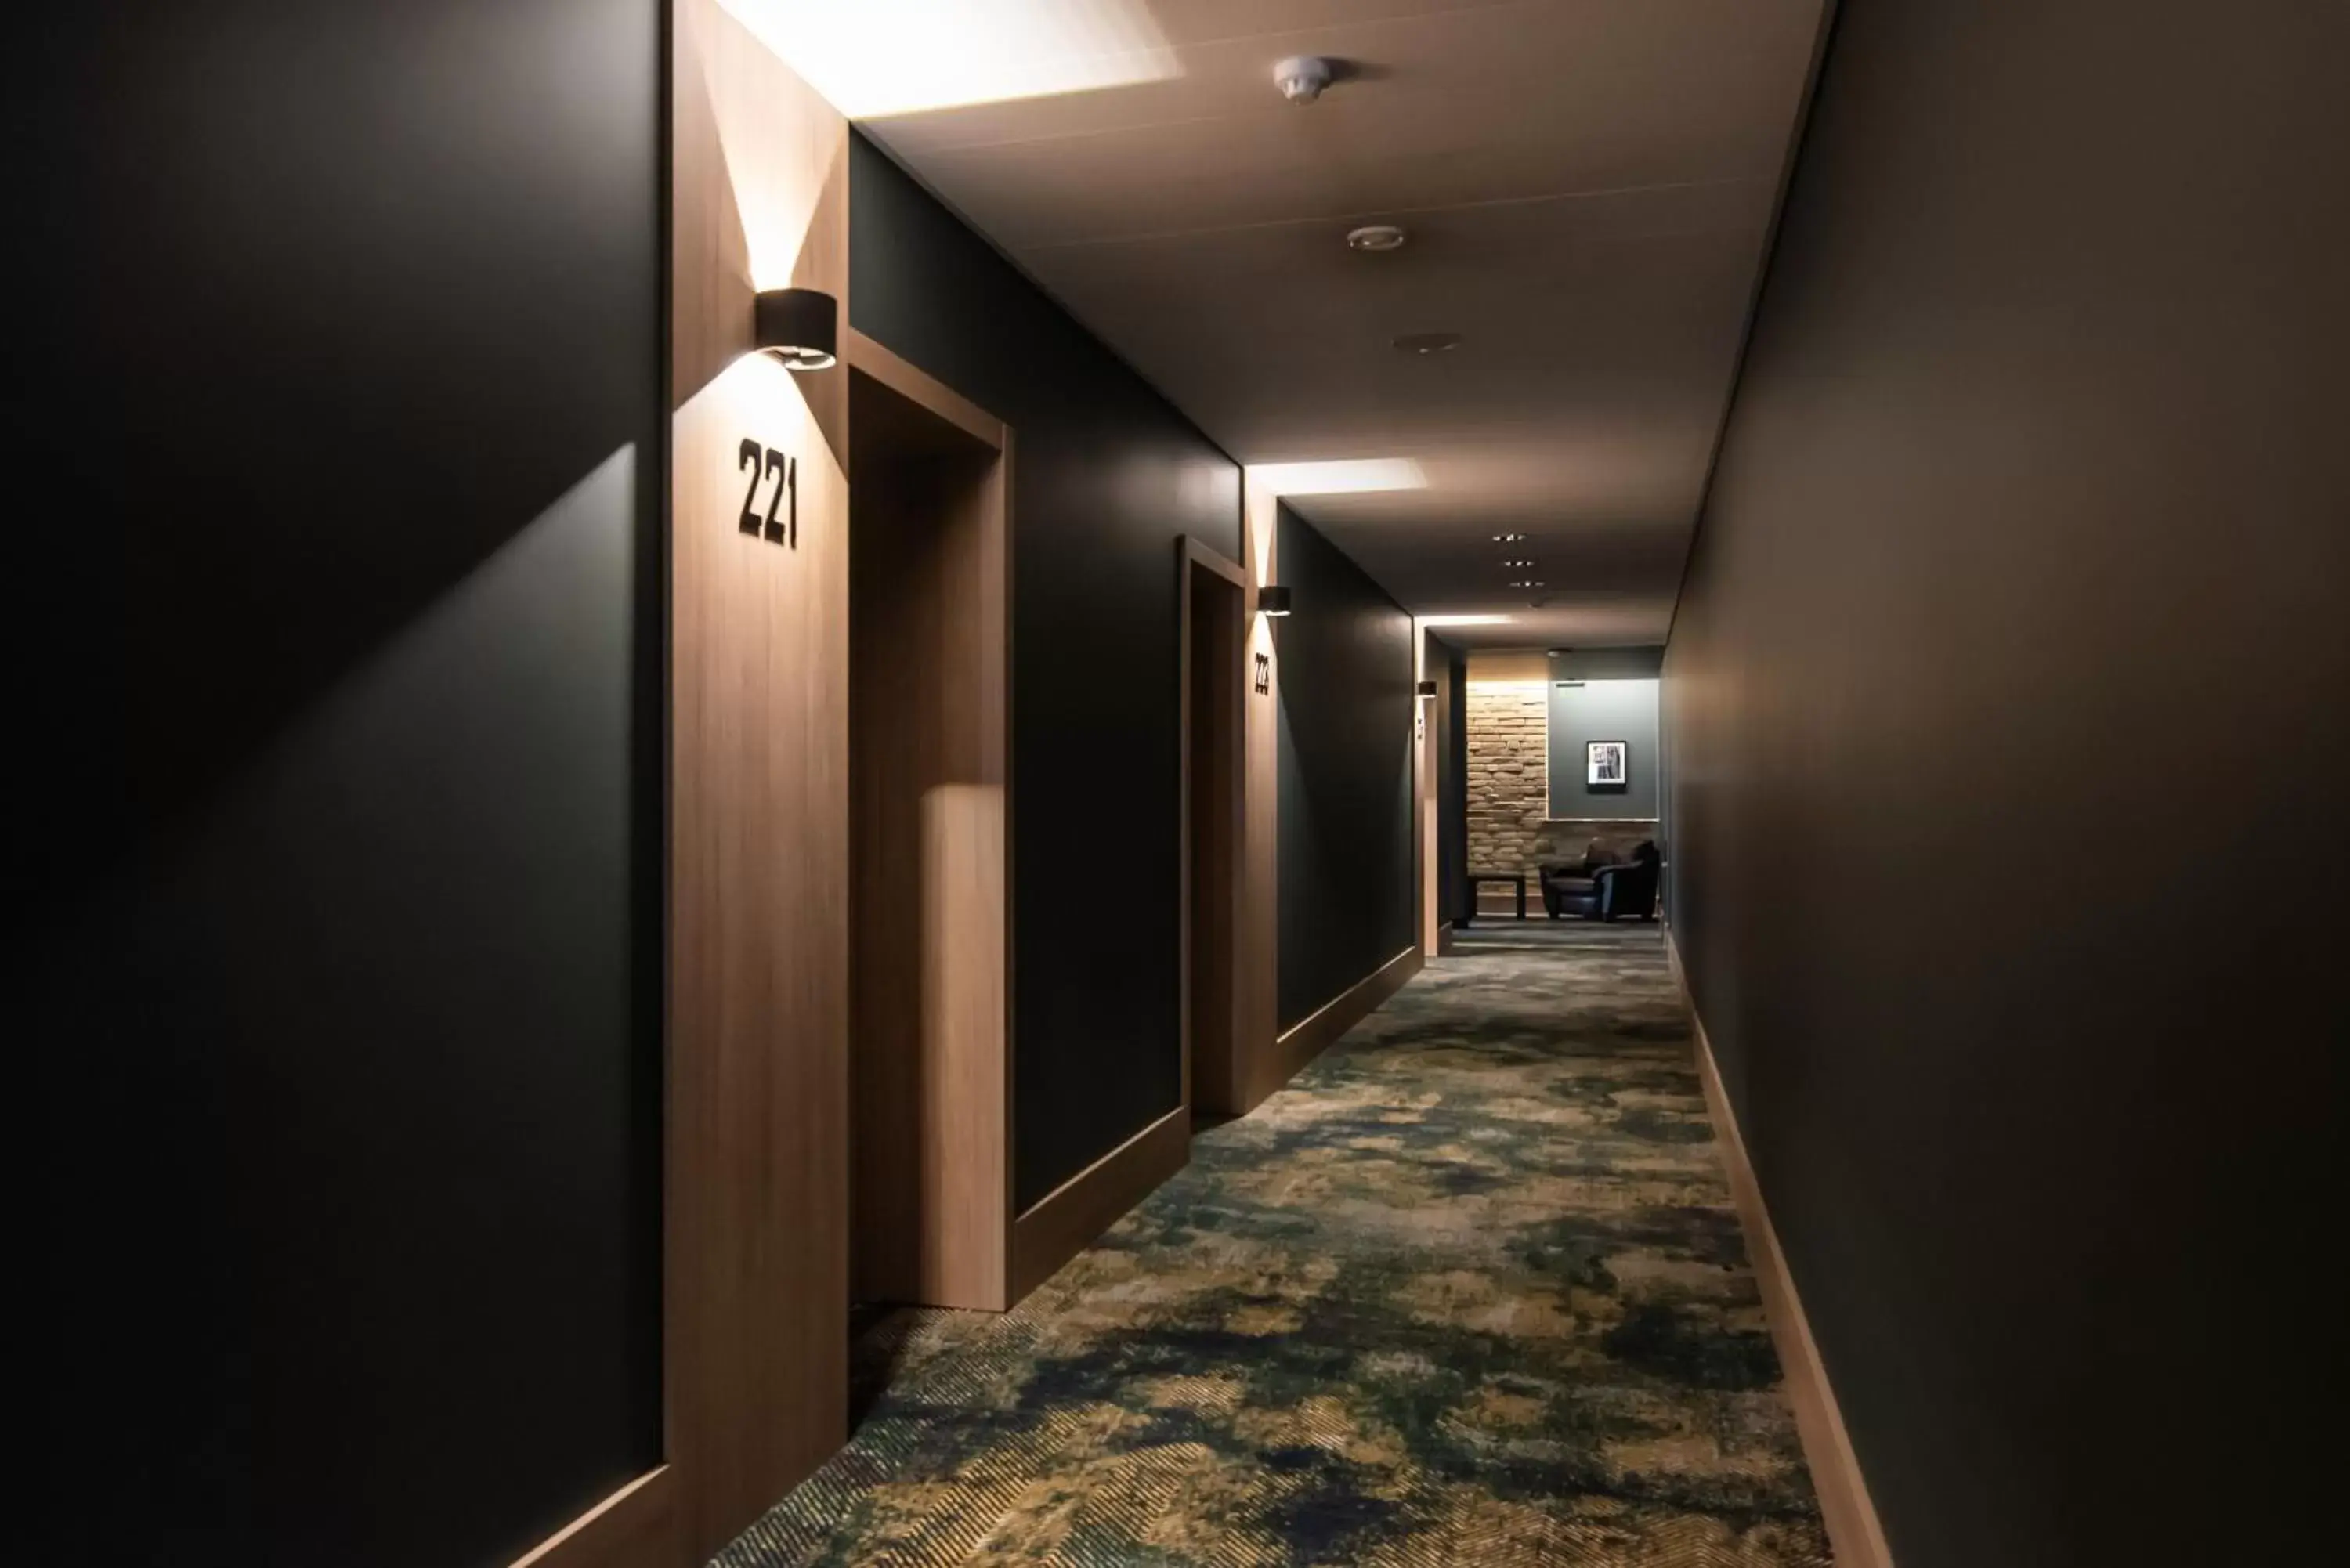 Floor plan, Lobby/Reception in Conti Hotel